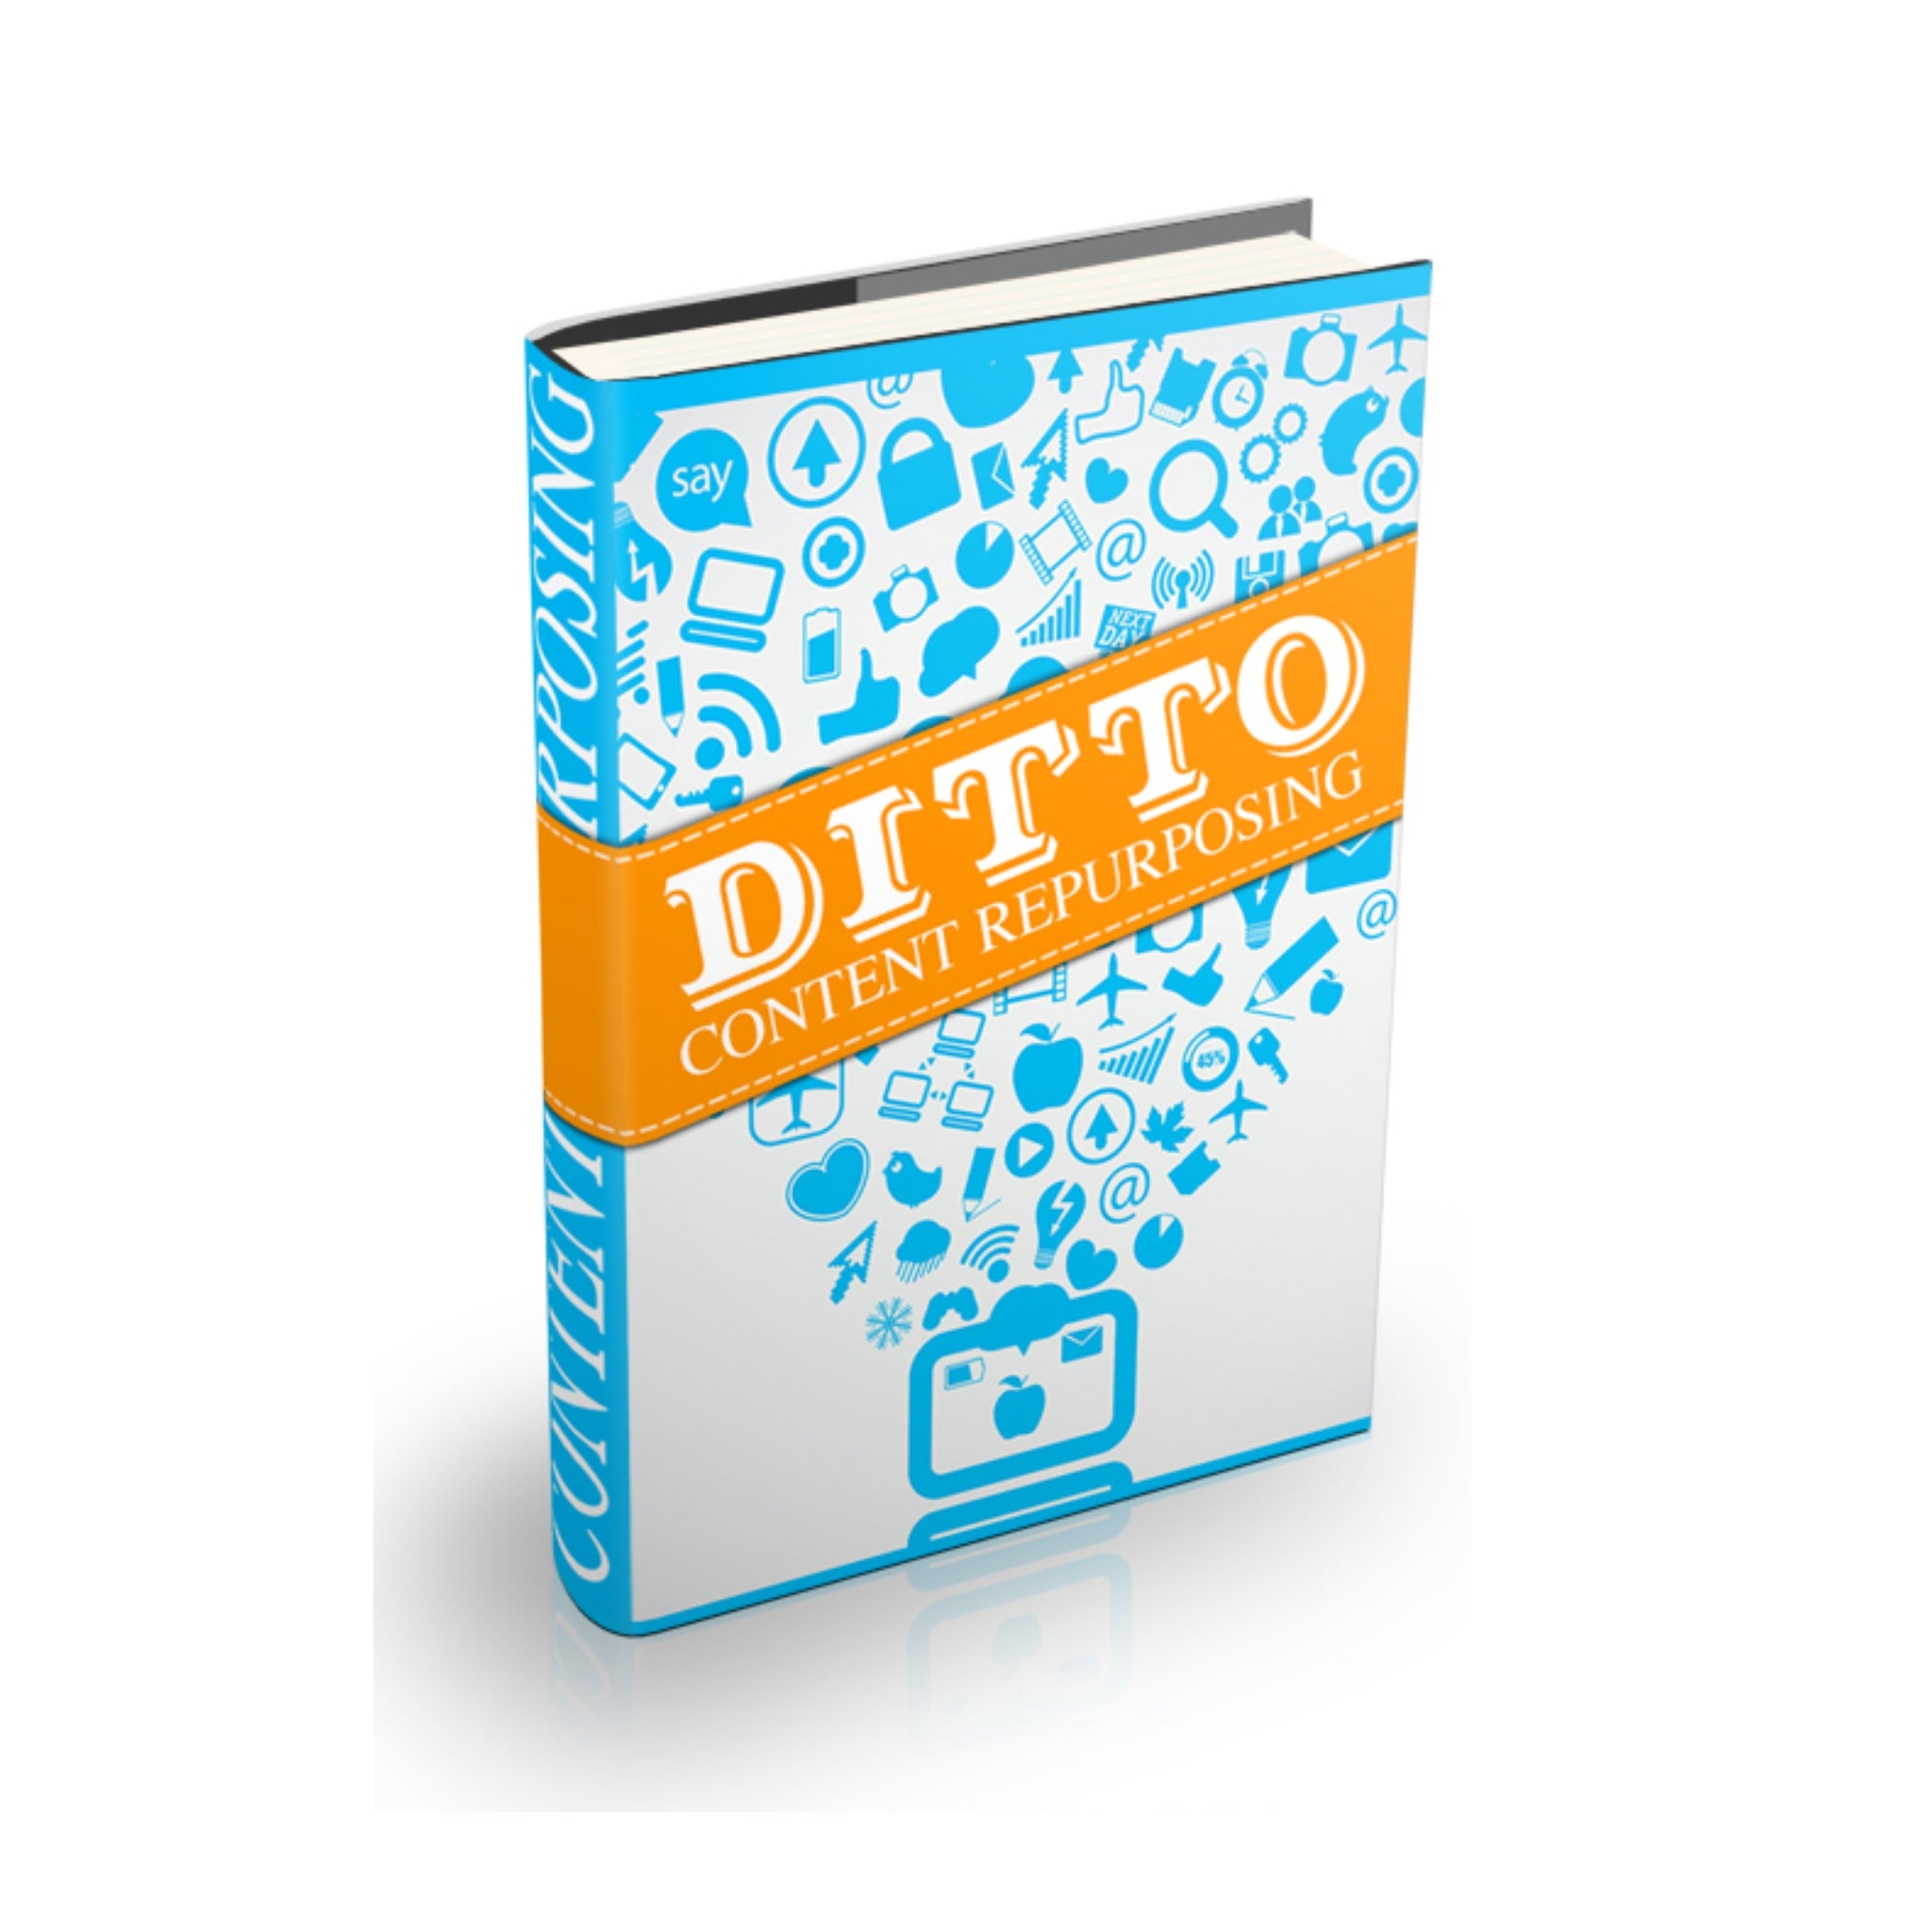 Ditto Content Repurposing Ebook